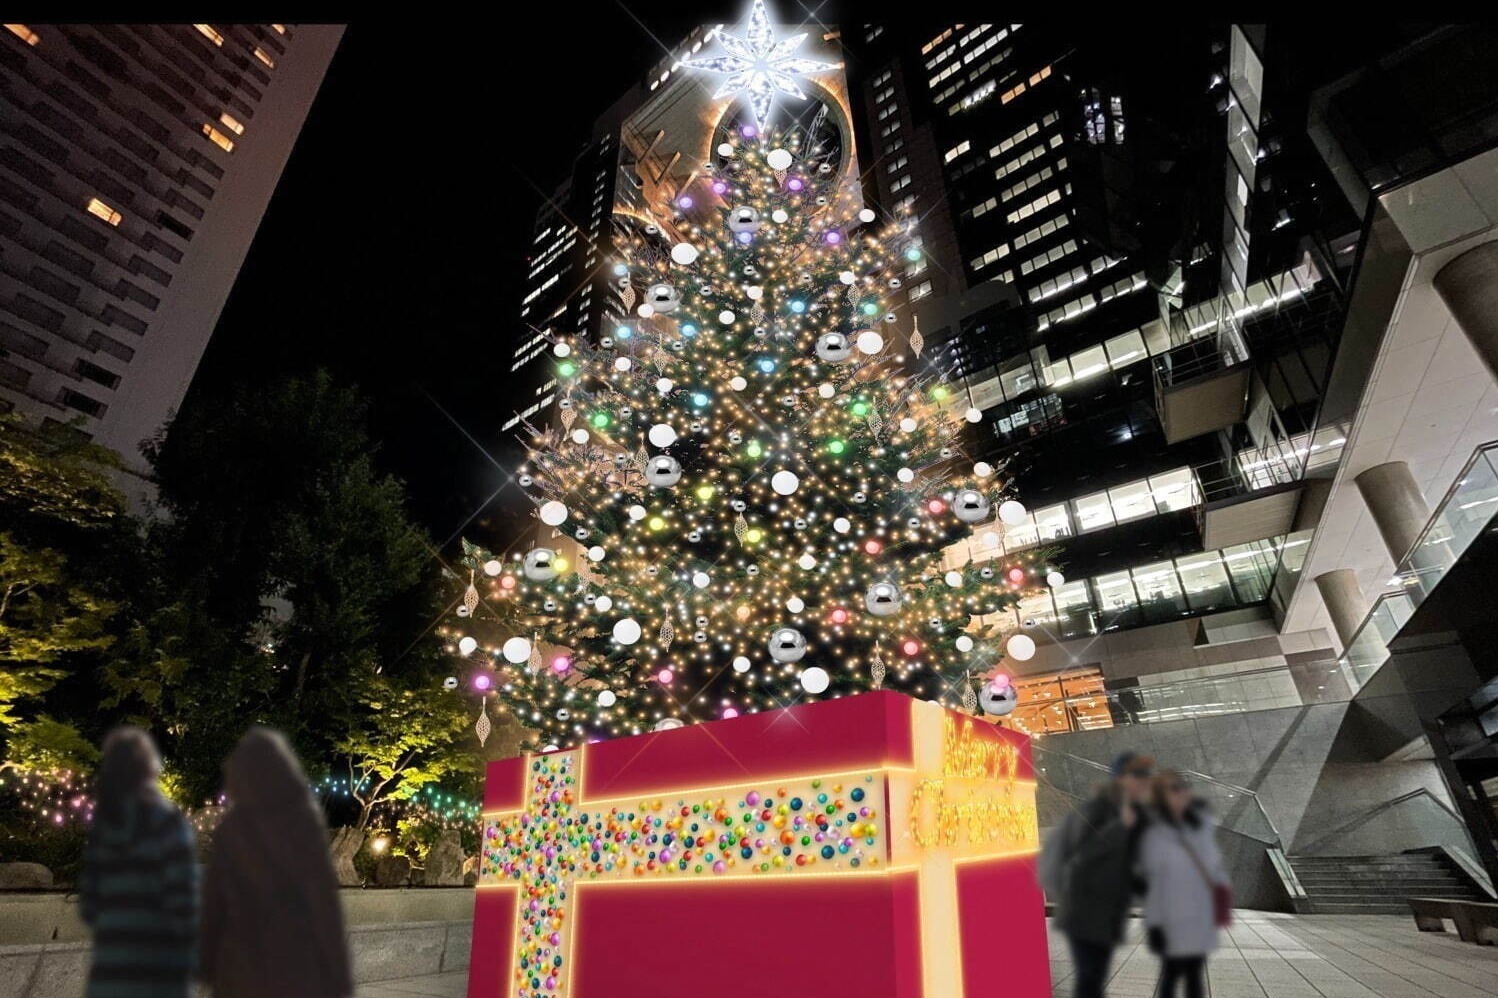 大阪 関西のイルミネーション22冬 おすすめ穴場デートスポット 無料クリスマスイベントなど ファッションプレス